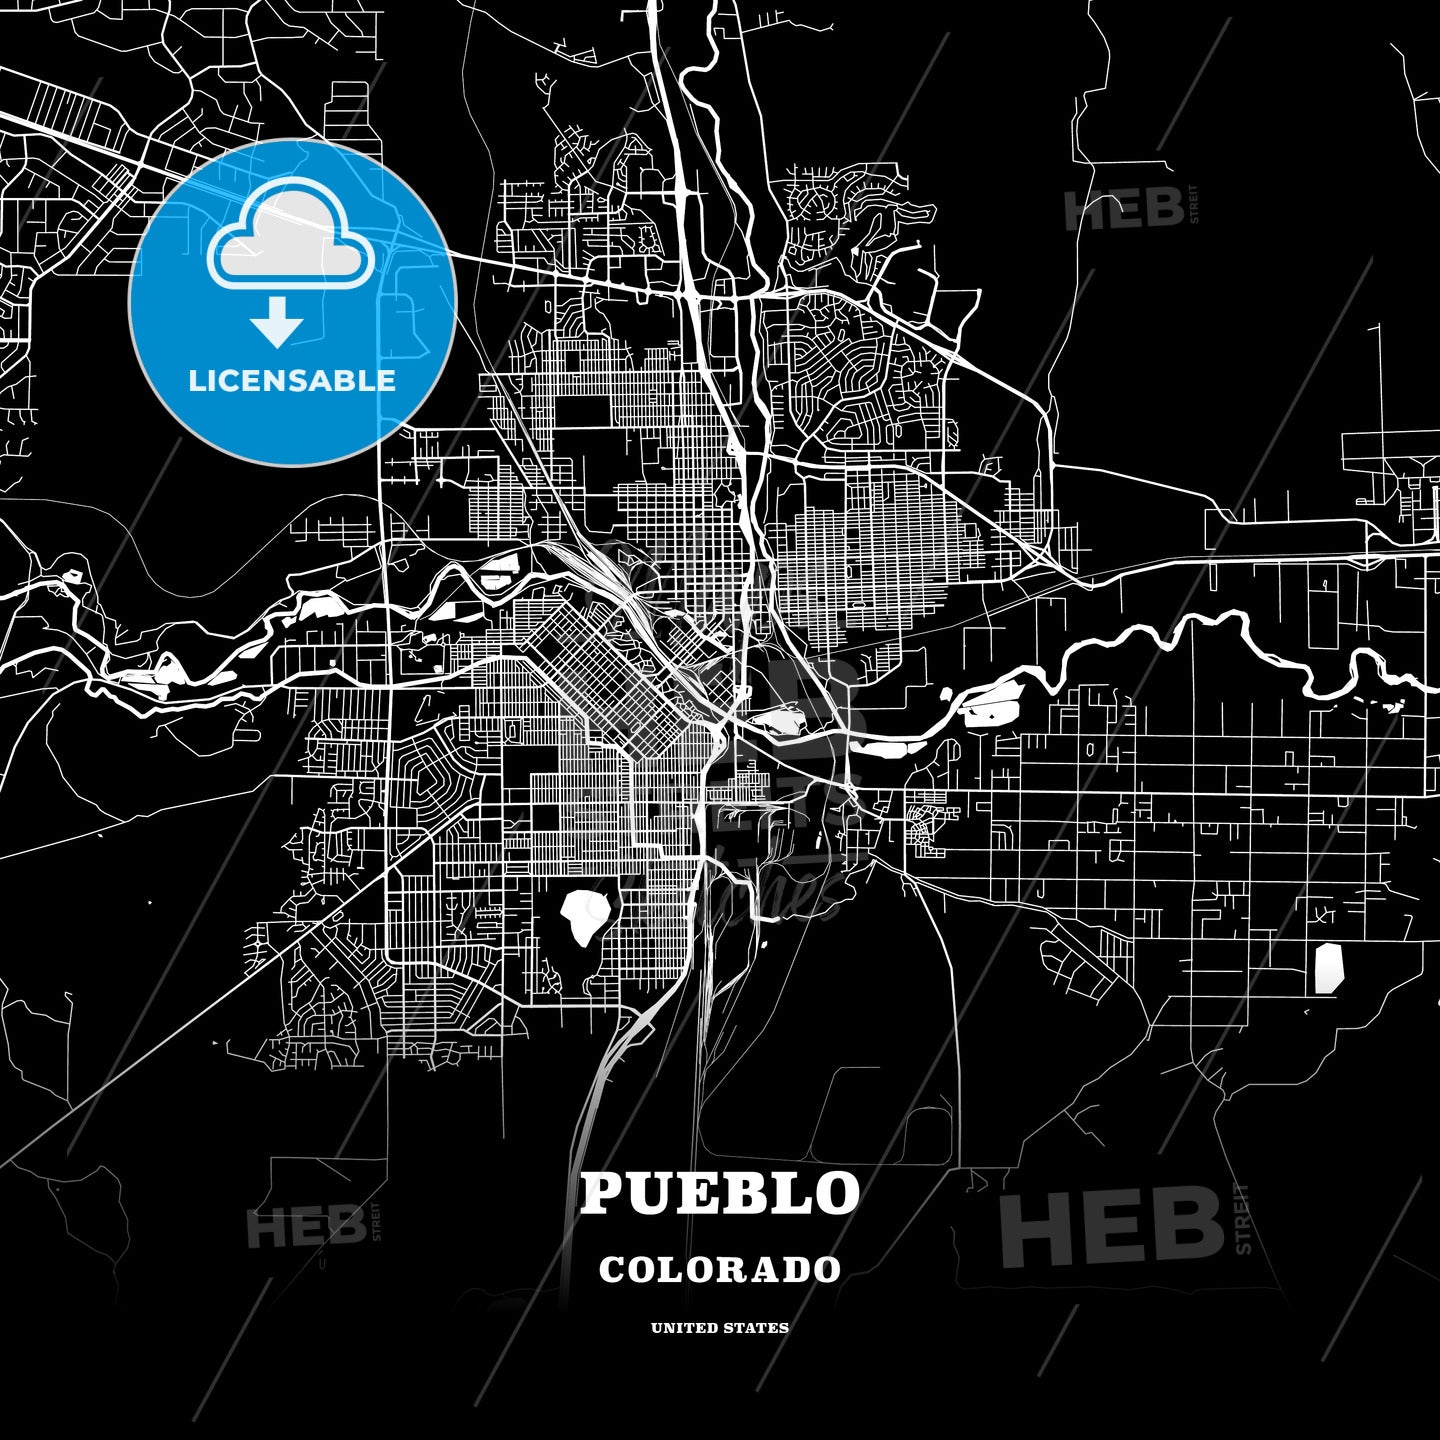 Pueblo, Colorado, USA map